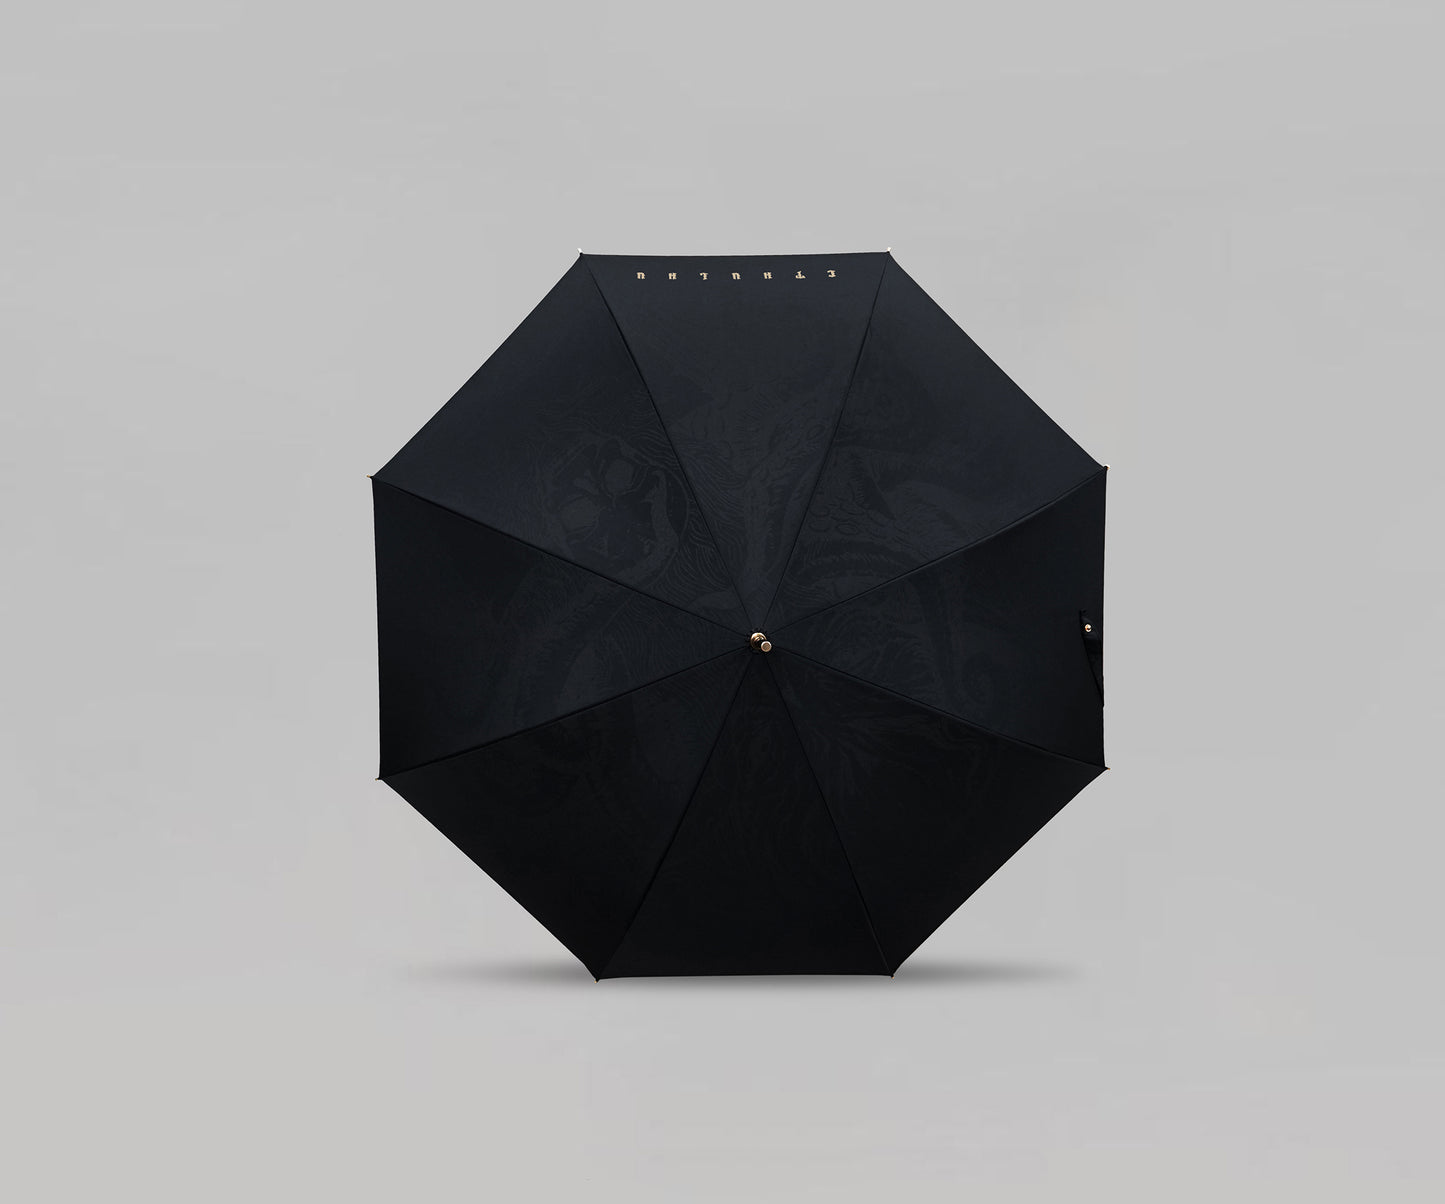 Rainy in R’lyeh Cthulhu Umbrella